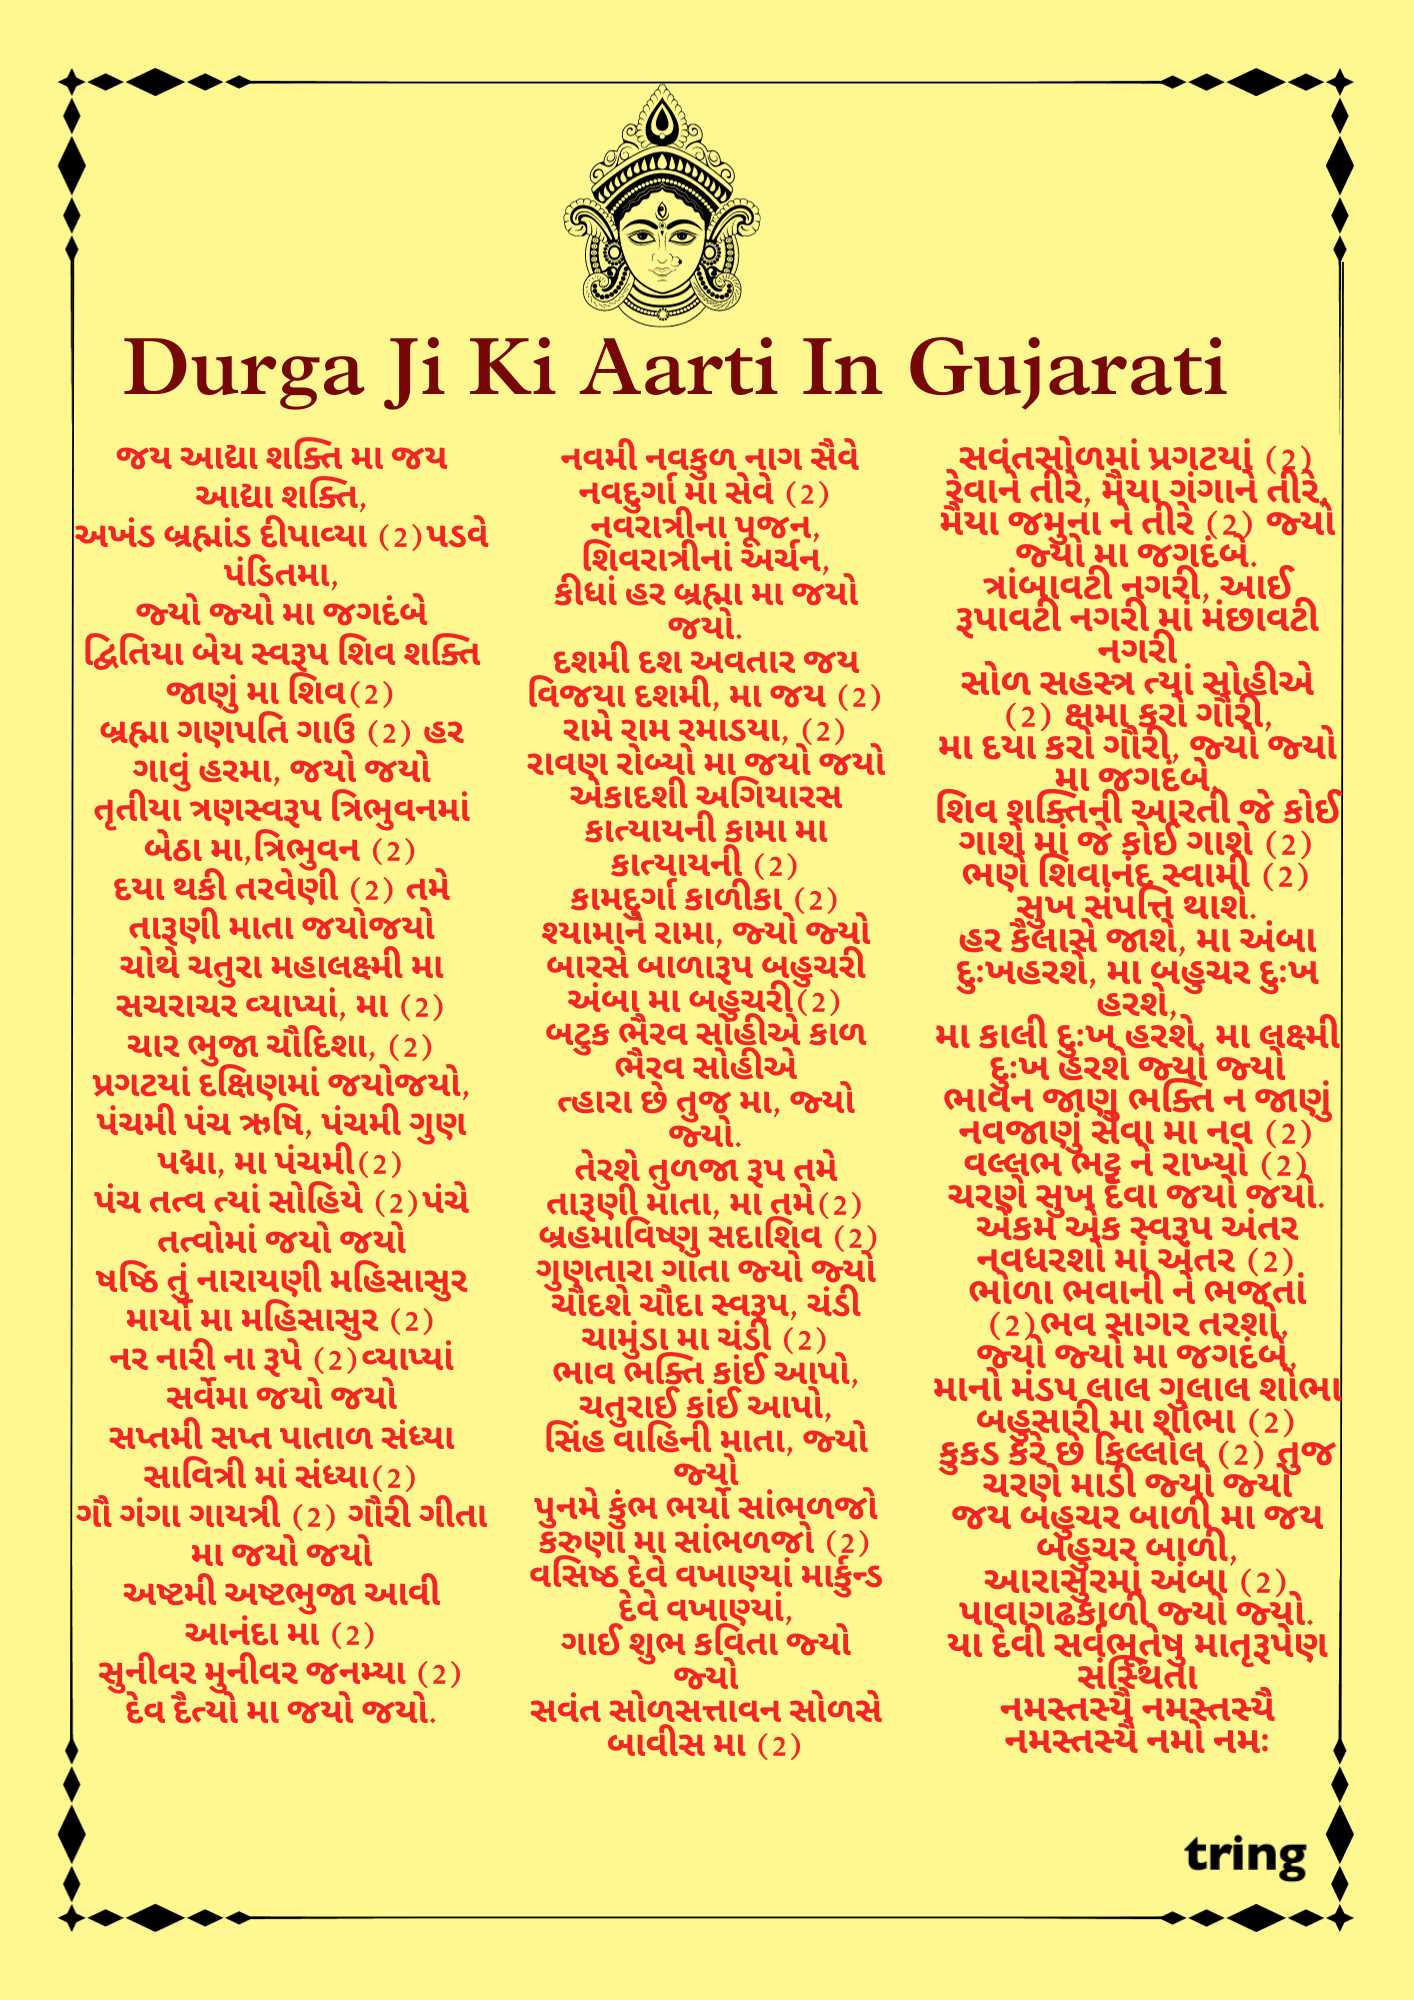 Durga Ji Ki Aarti Images (2)